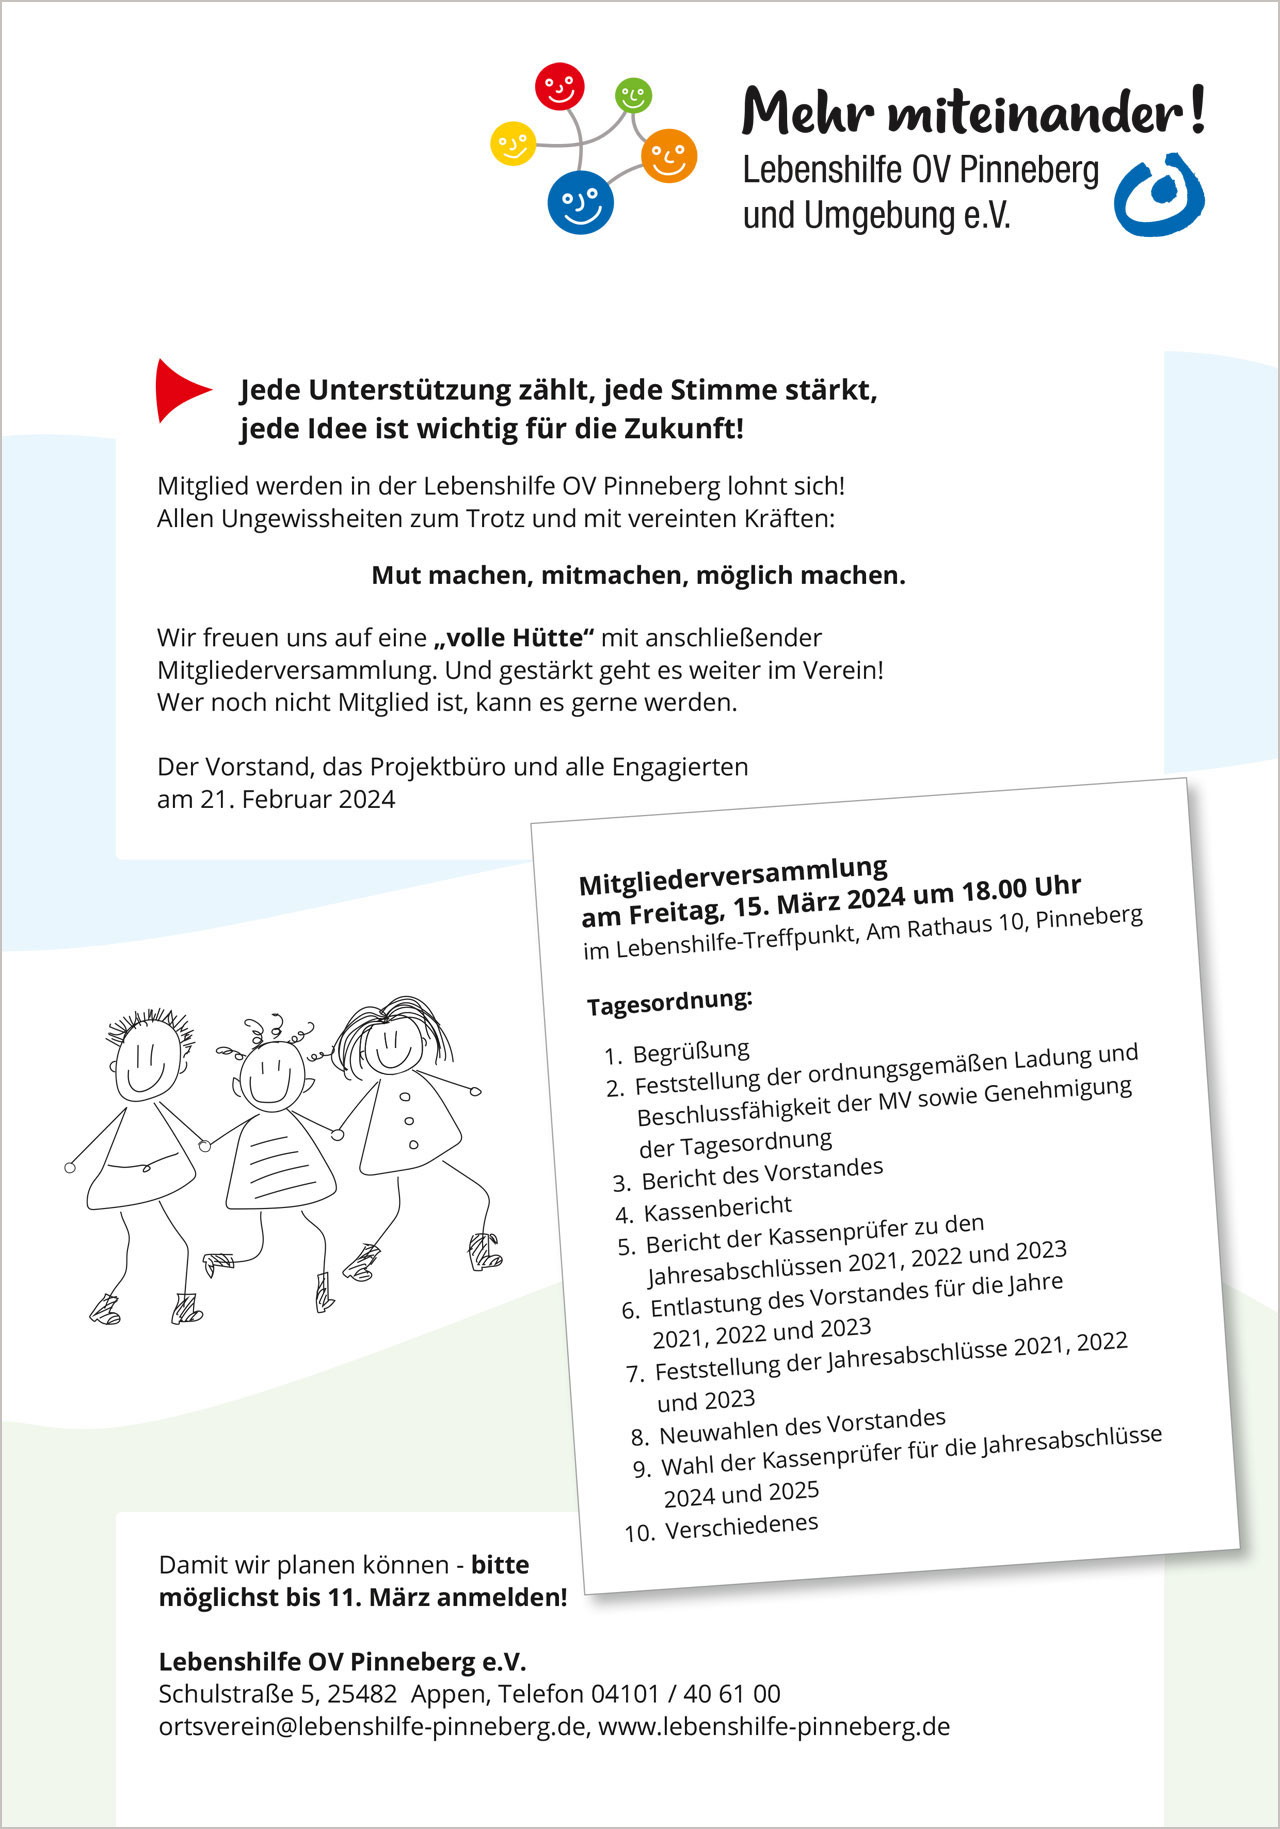 Einladung Mitgliederversammlung Lebenshilfe OV Pinneberg am 15. März 2024, Seite 2